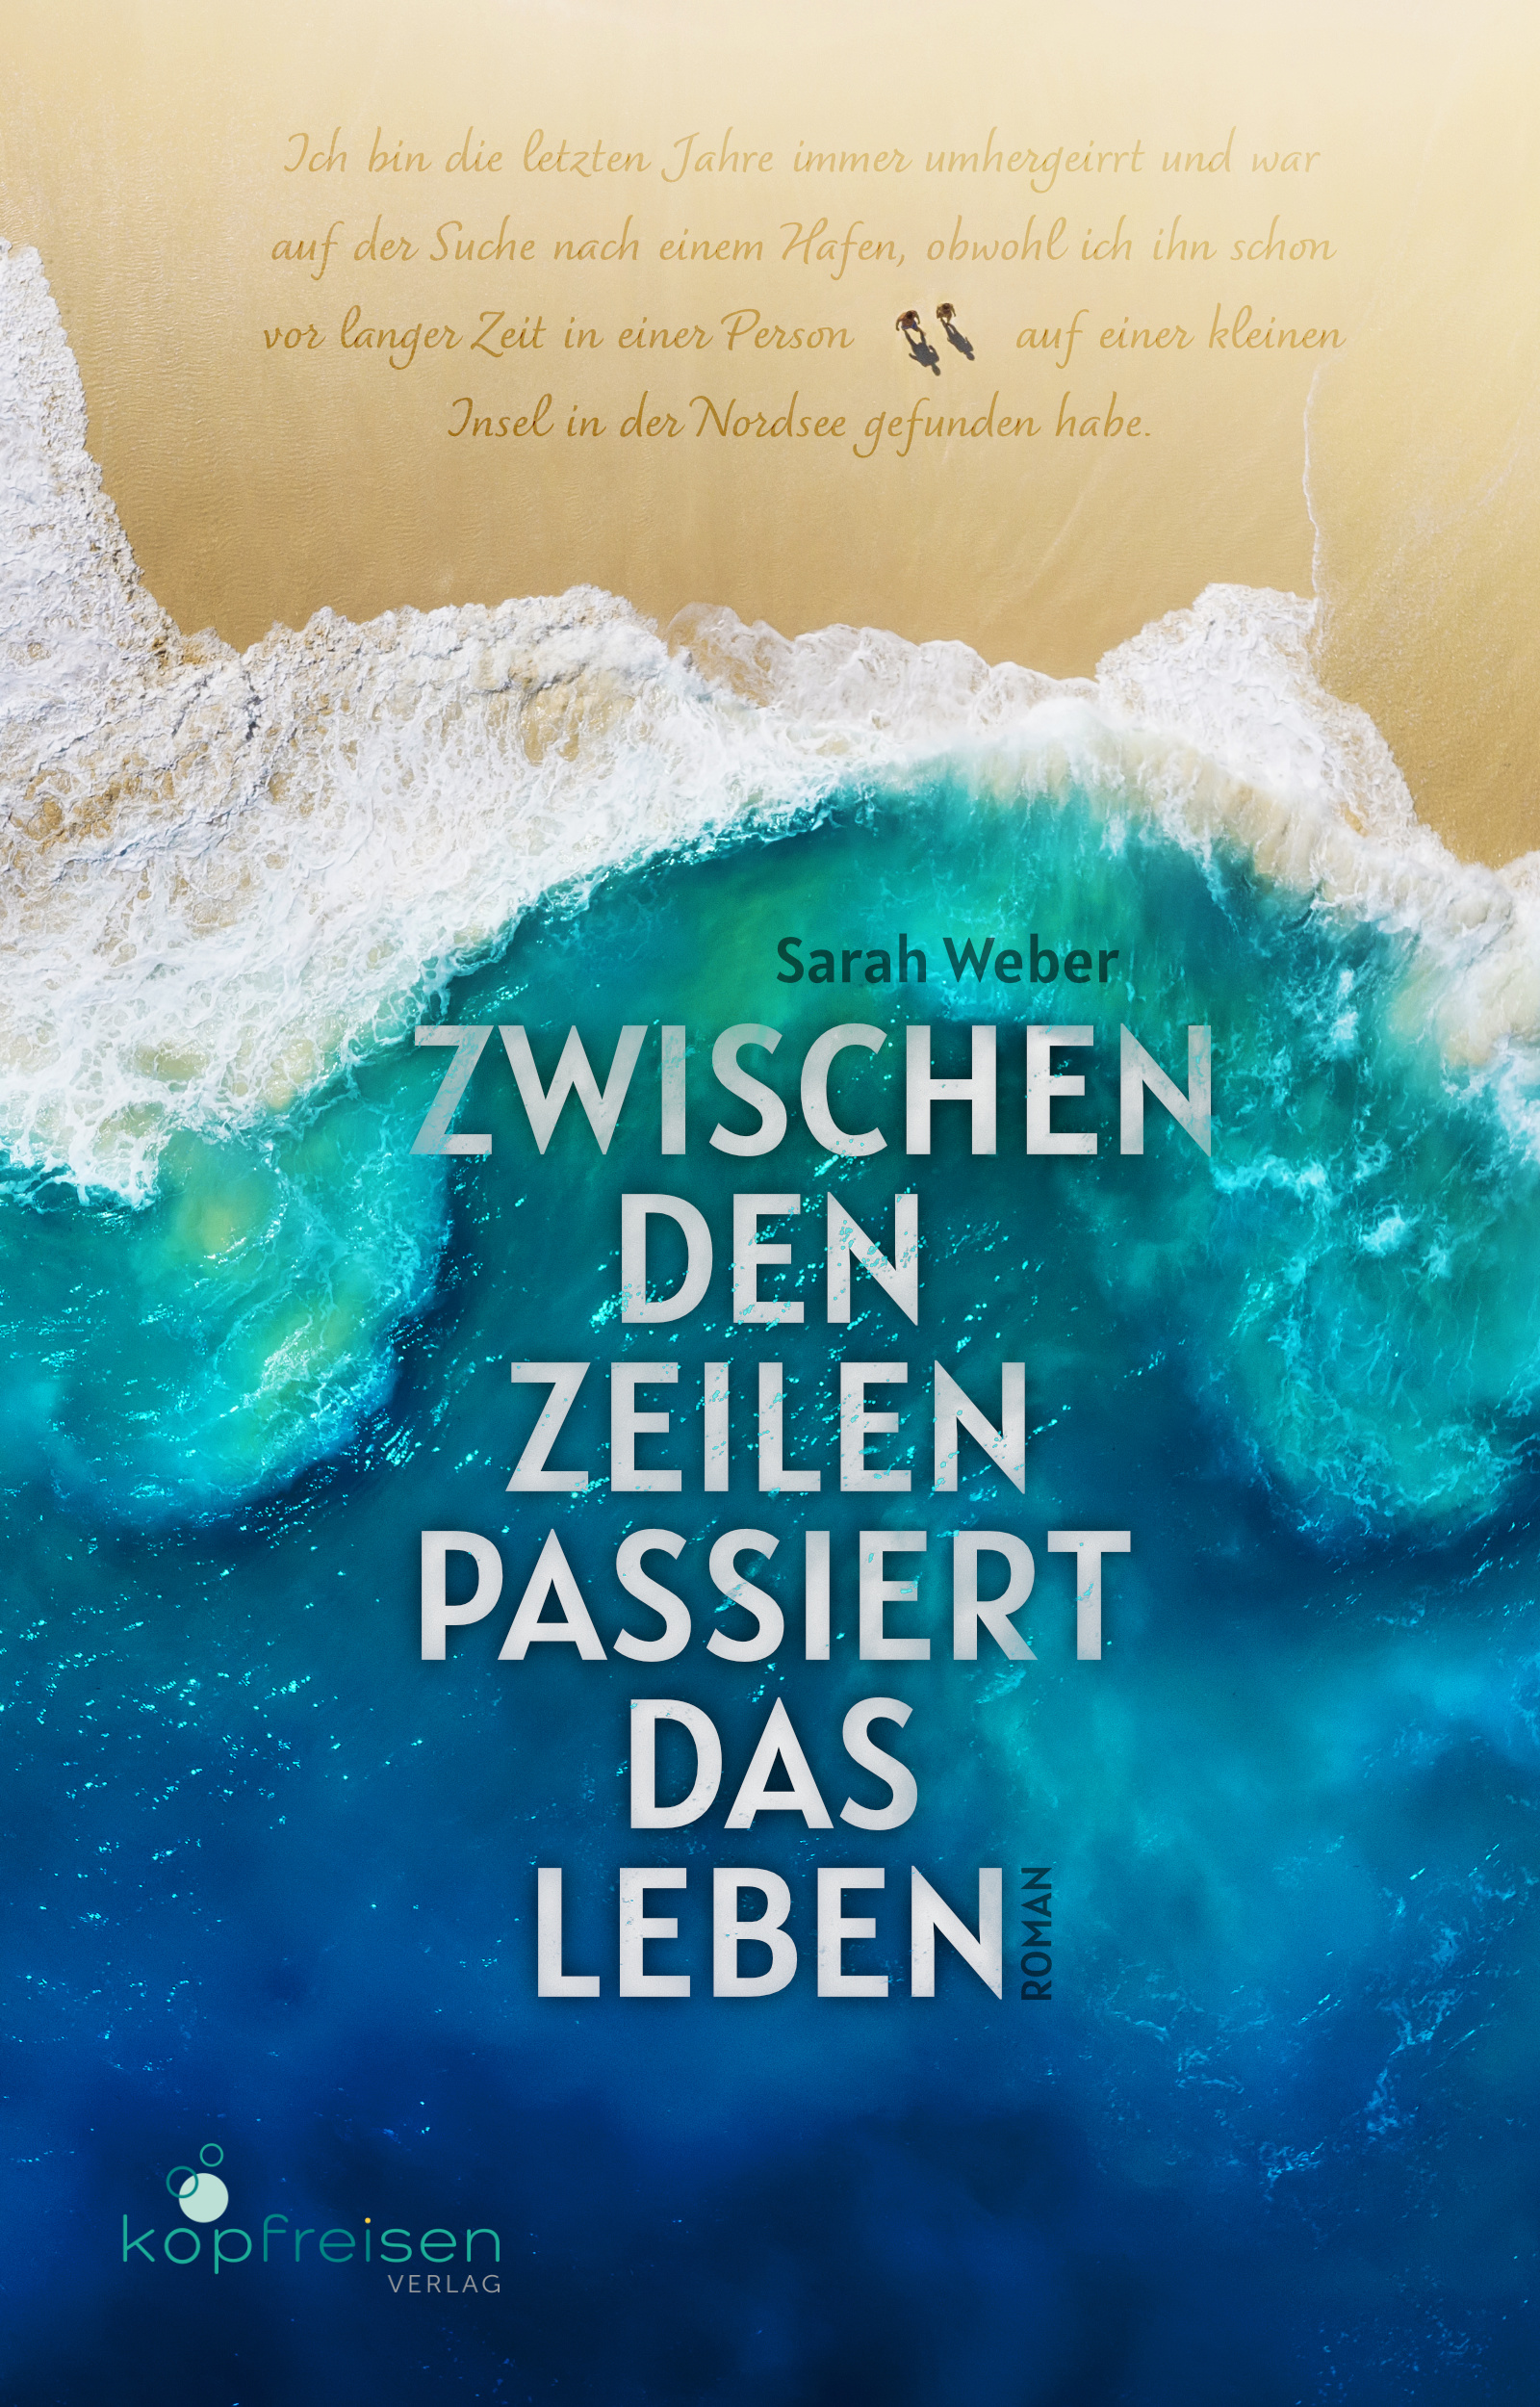 Cover - Zwischen den Zeilen - Sarah Weber